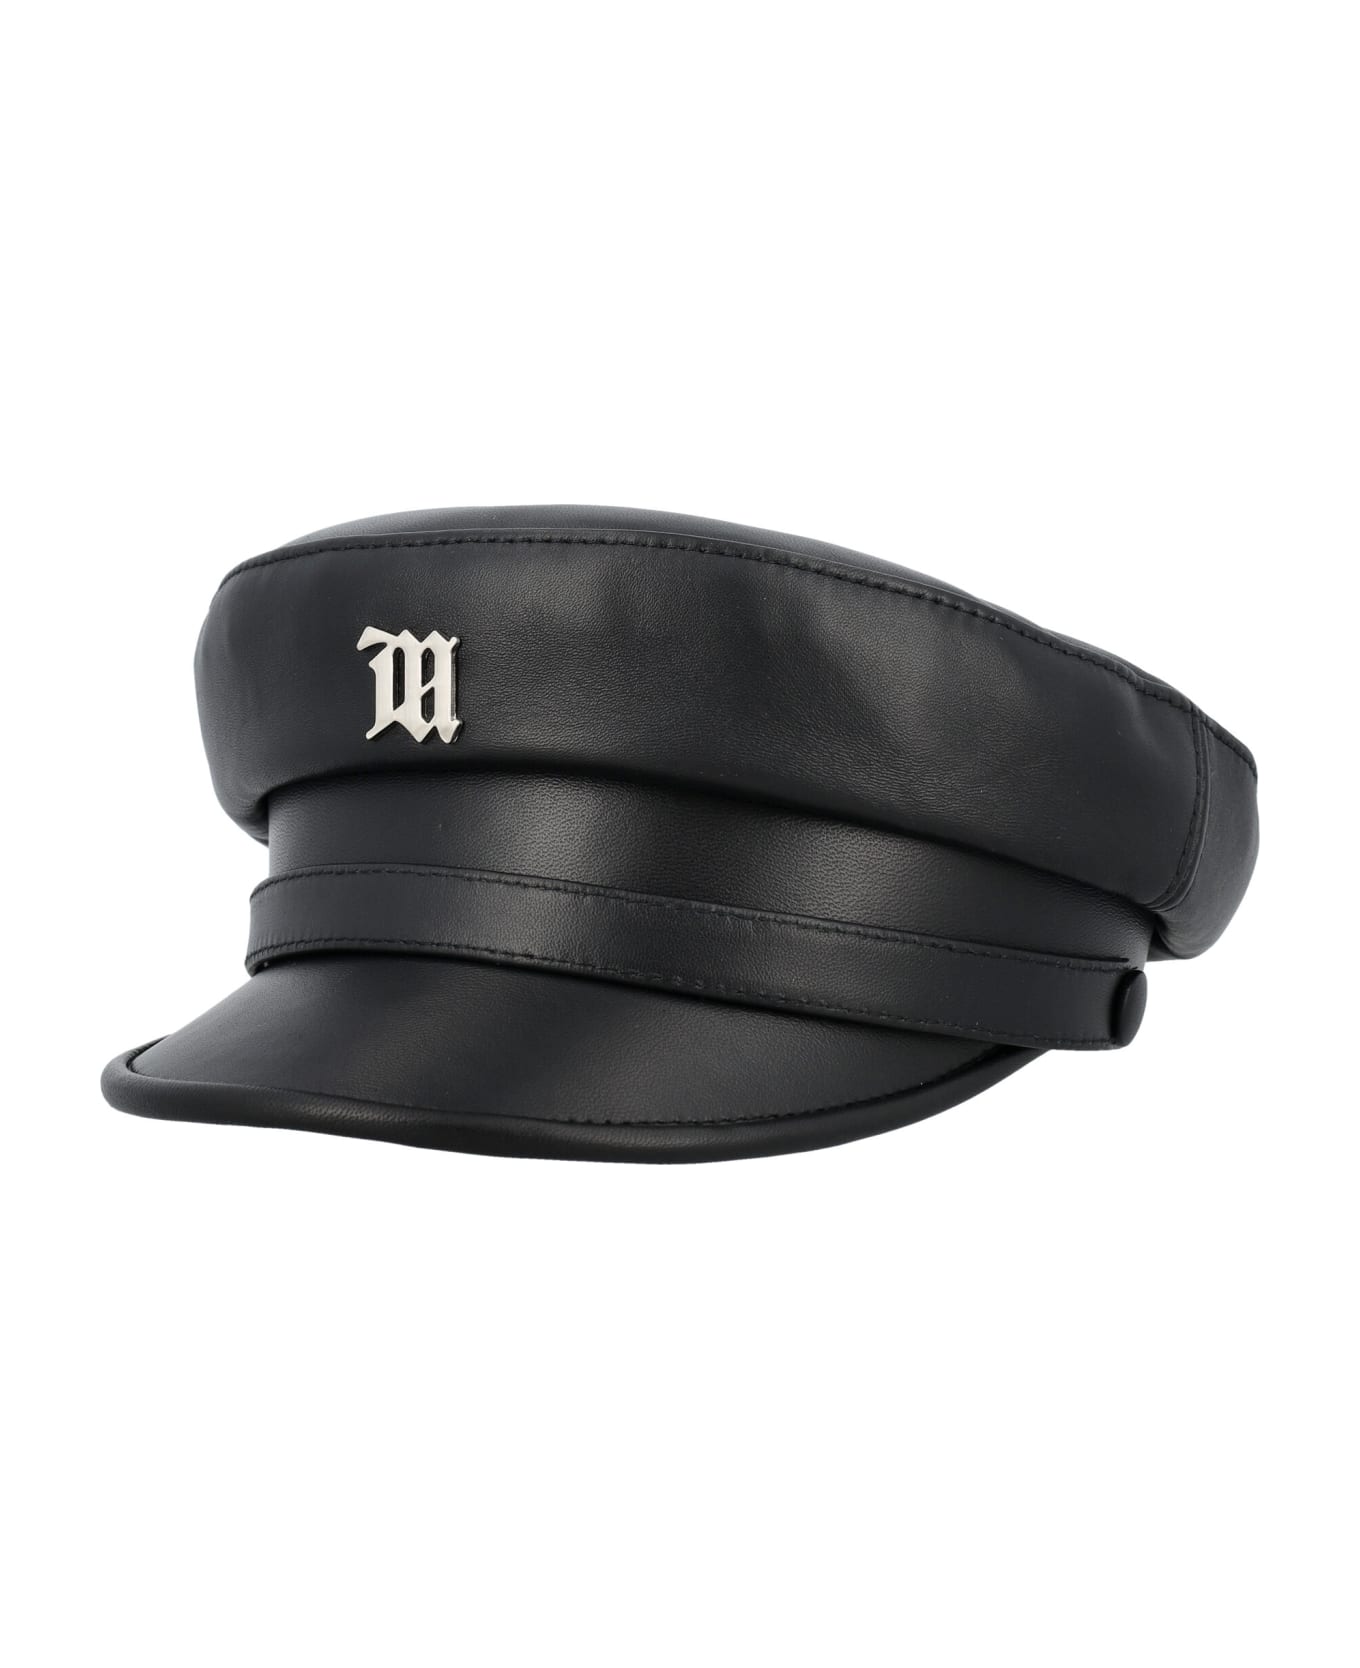 MISBHV Signature Gavroche - BLACK 帽子